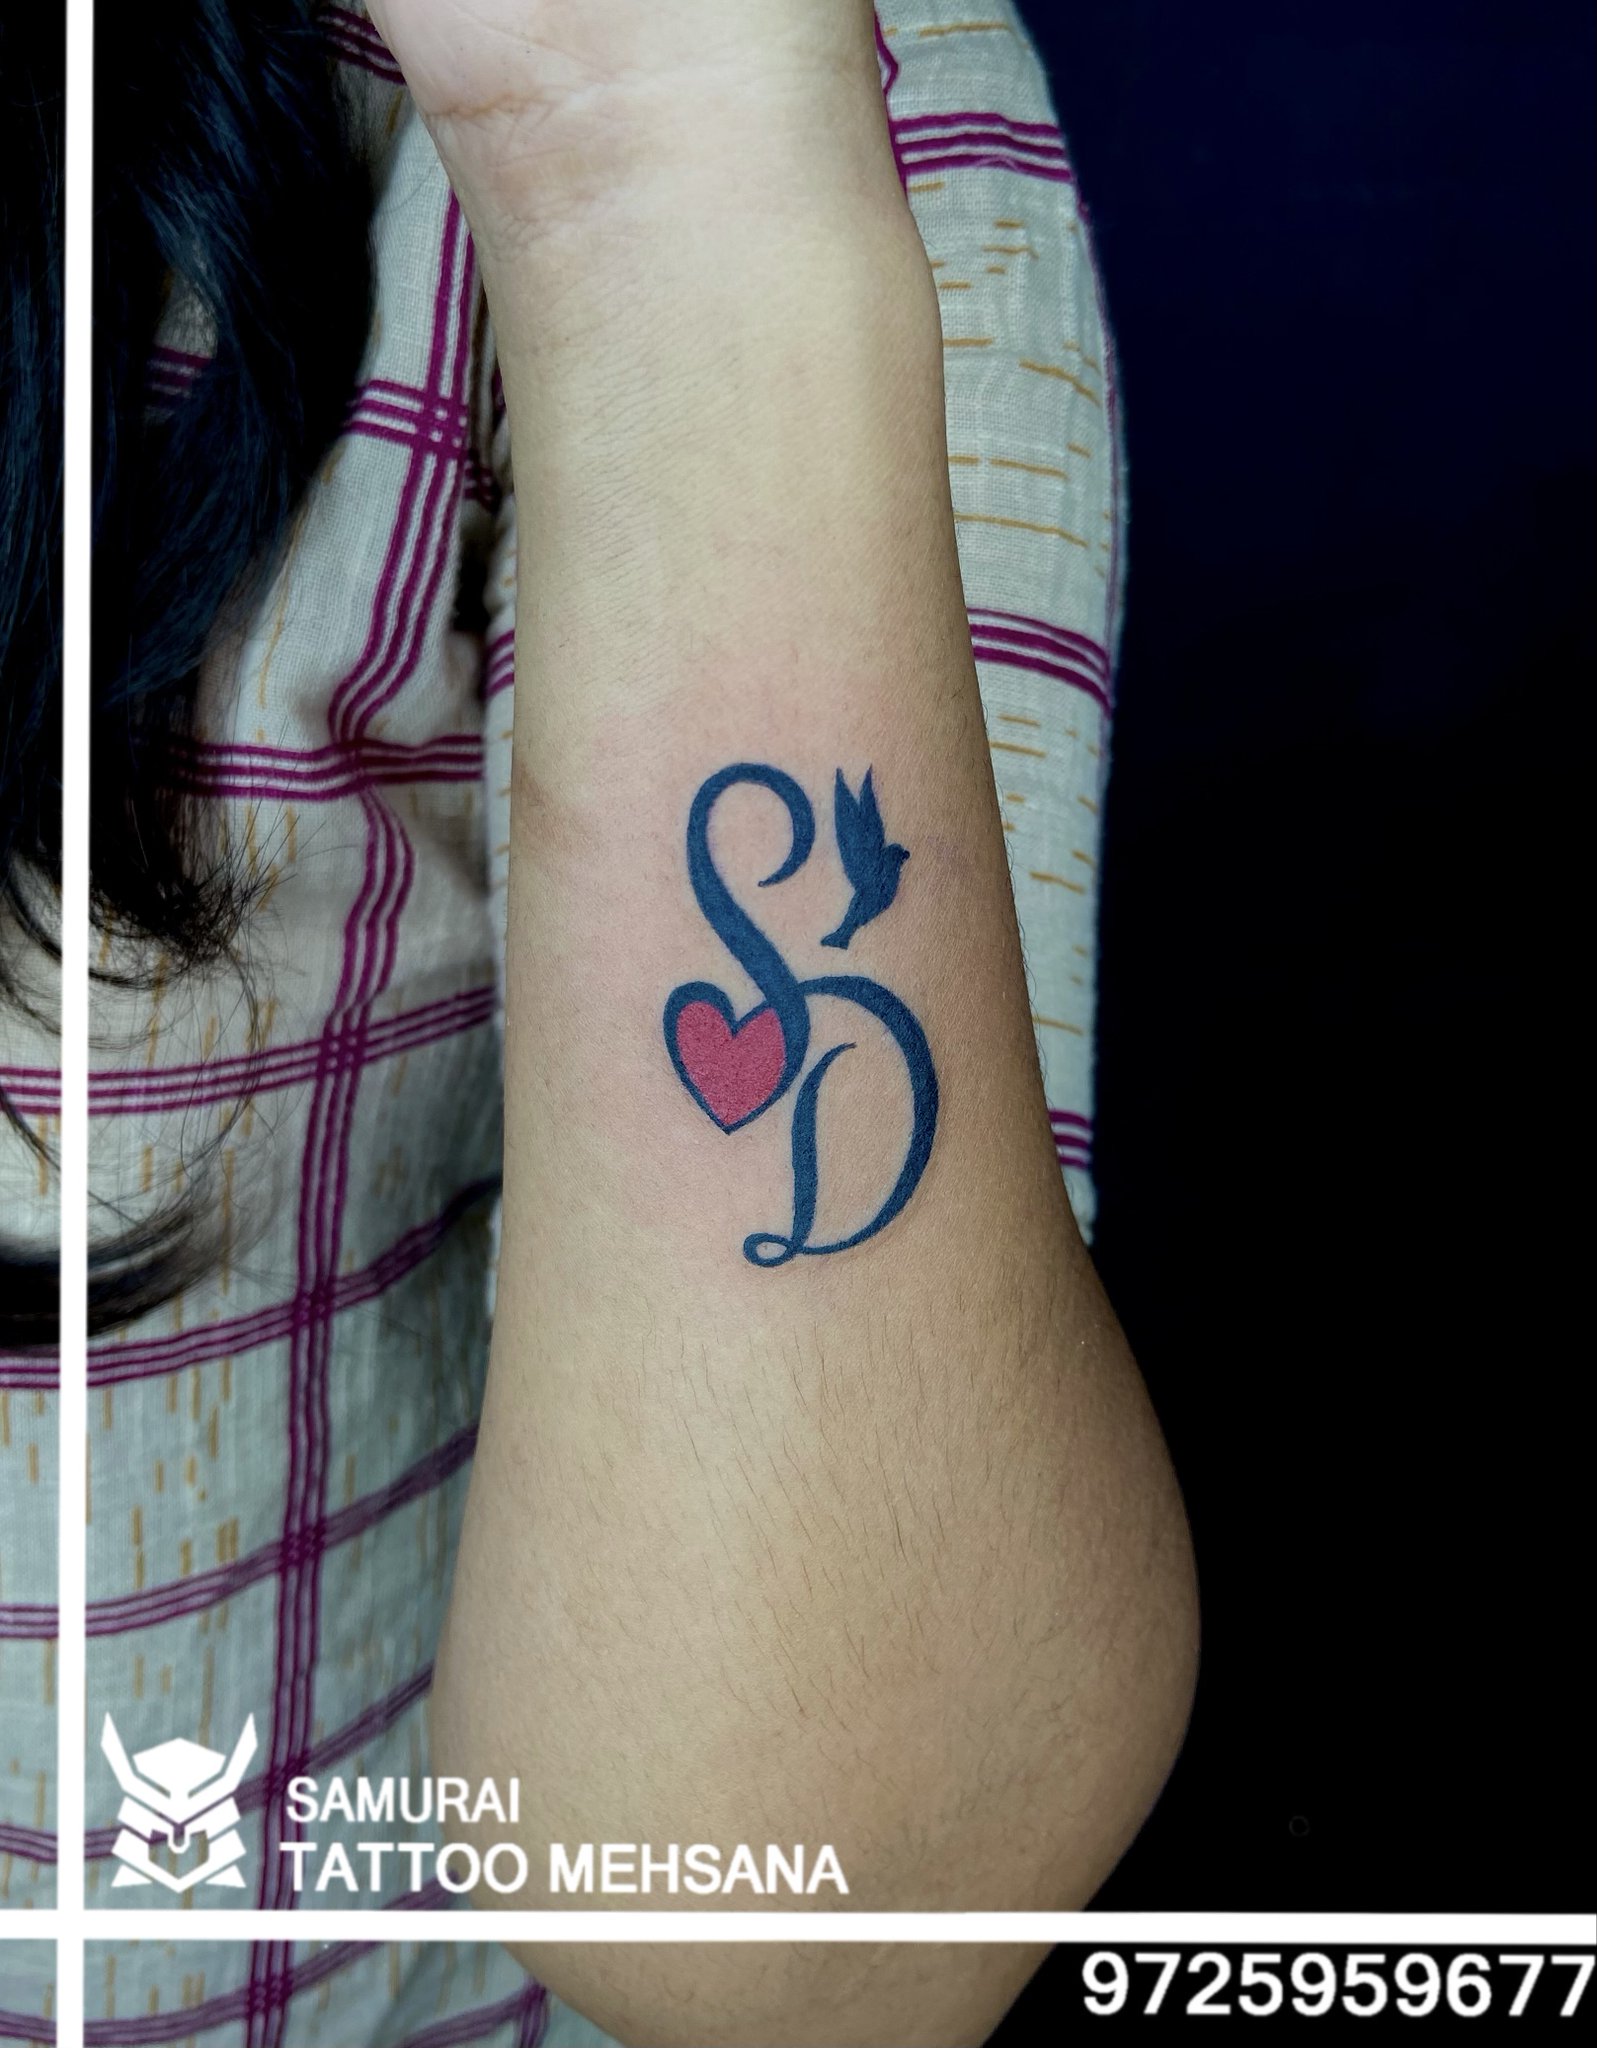 S D heart tattoo  Side wrist tattoos Heart tattoo Tattoo lettering